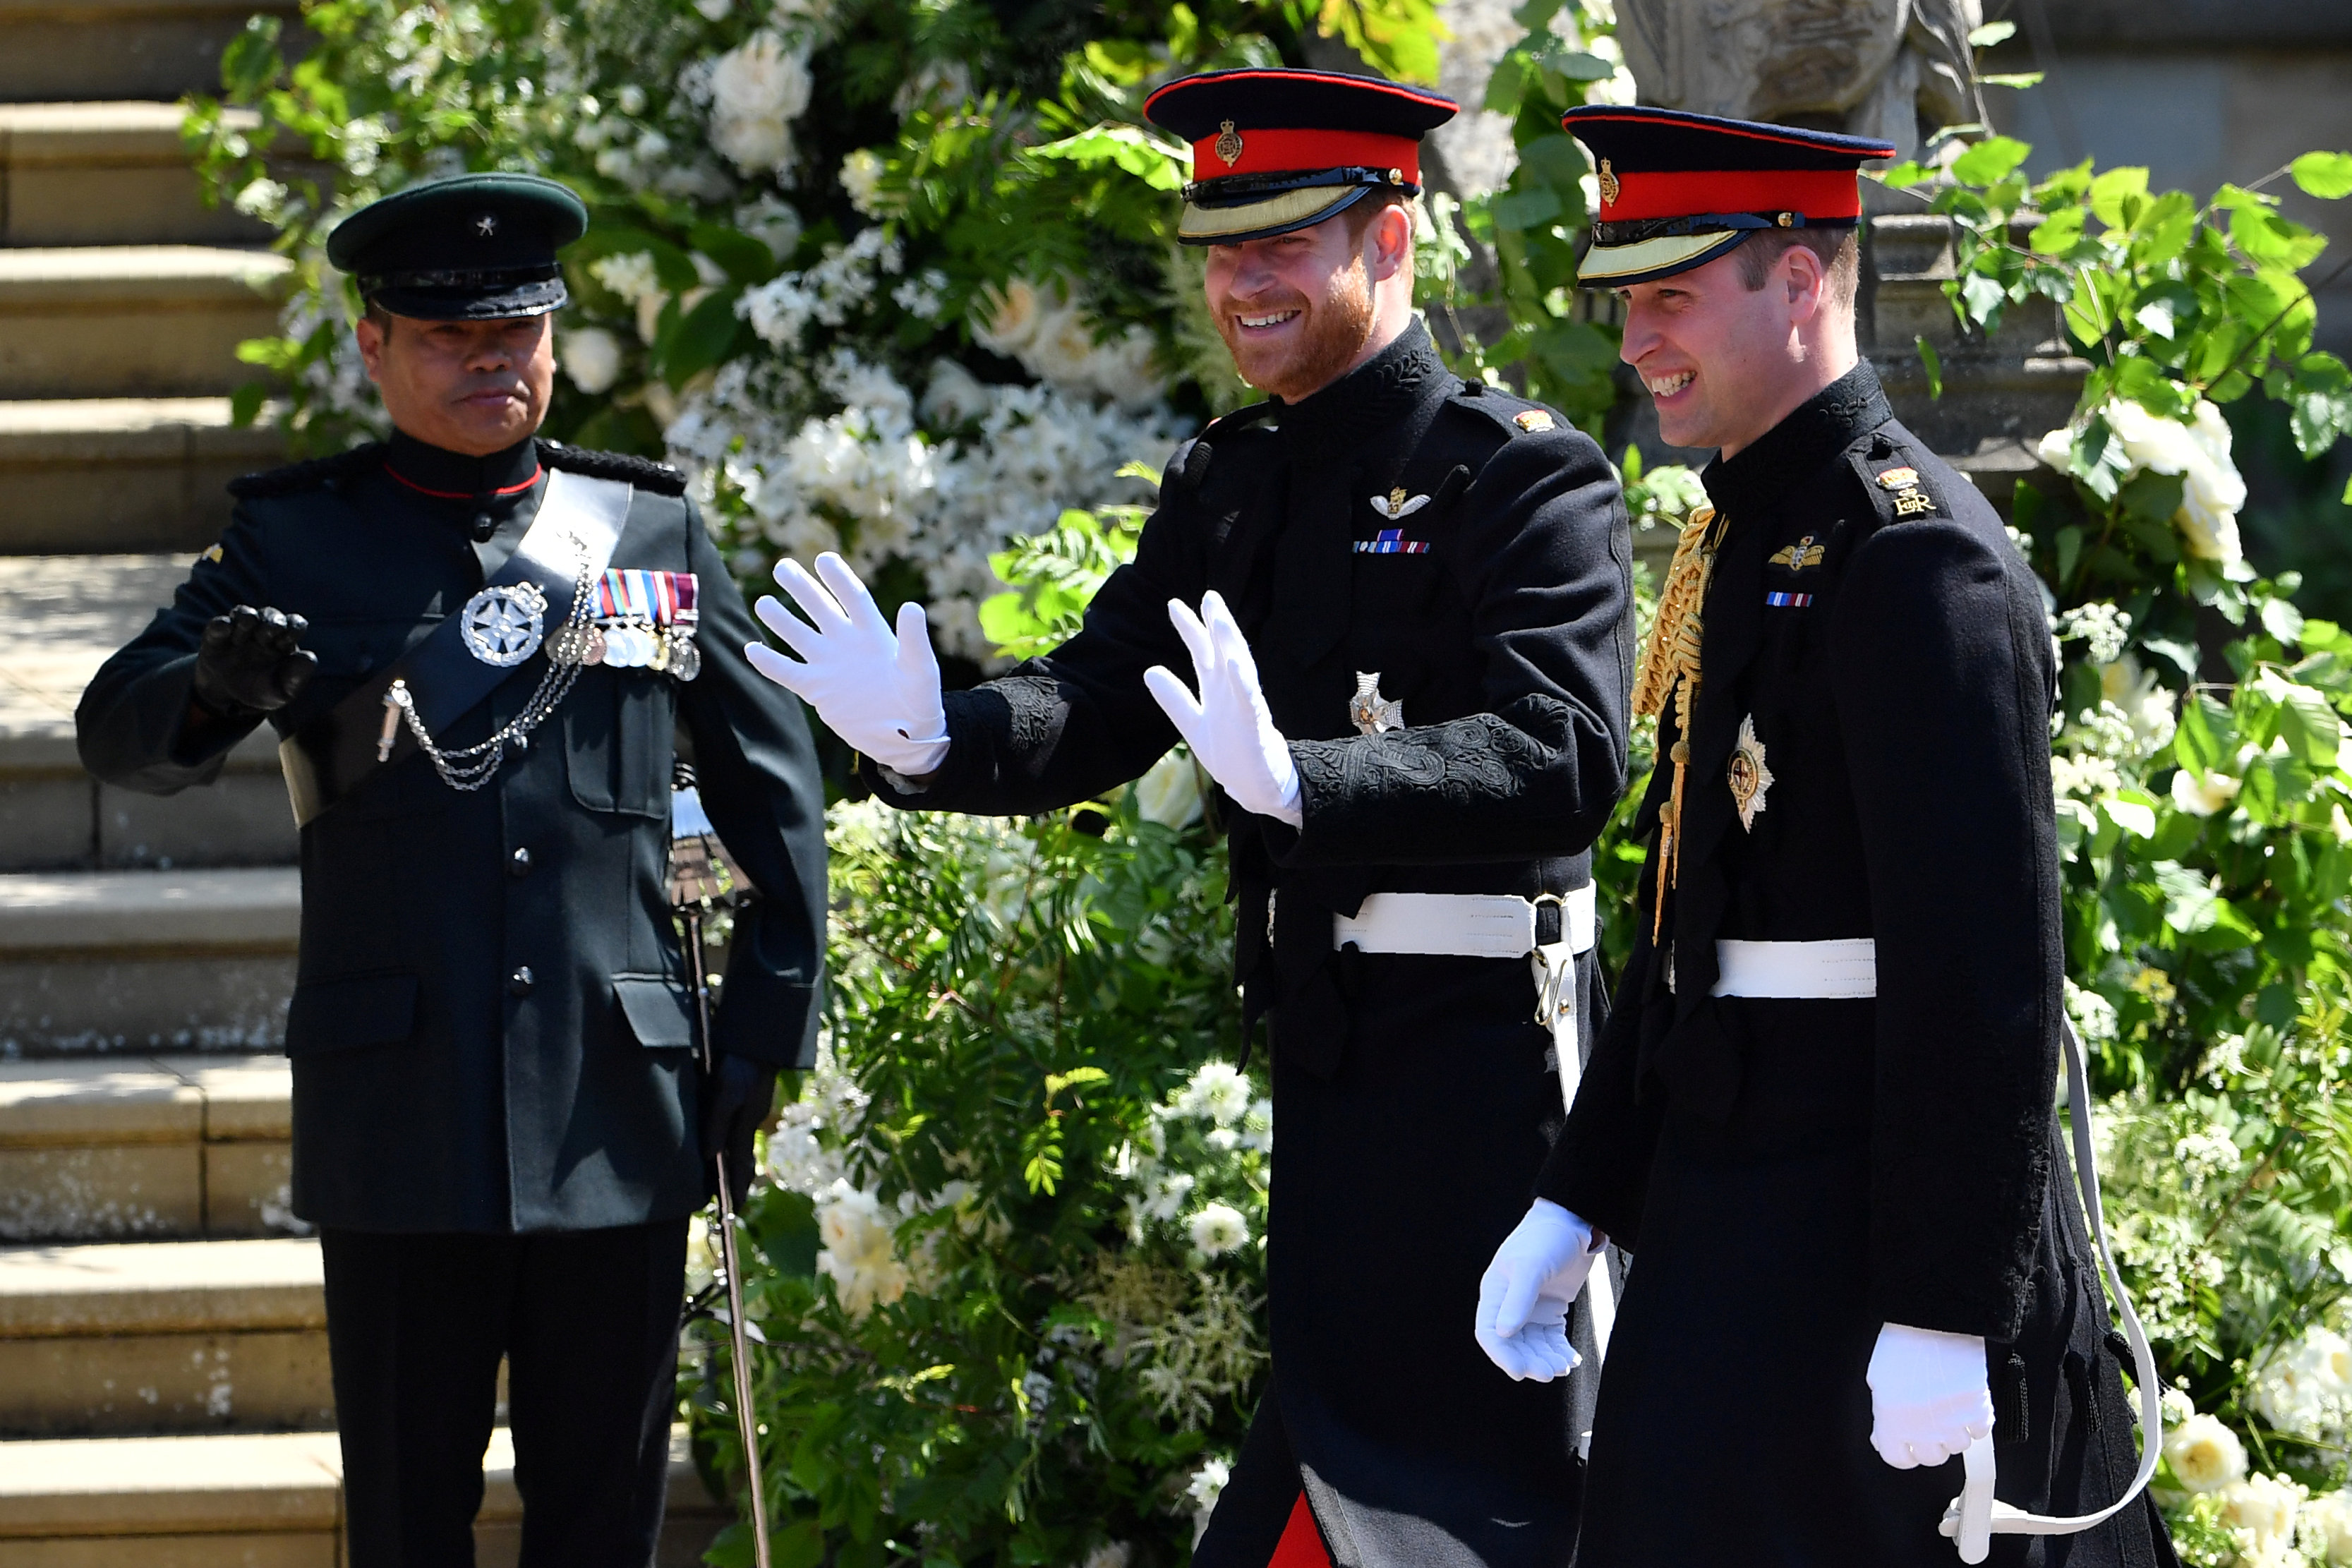 Reina Isabel II otorga al príncipe Harry el título de duque de Sussex